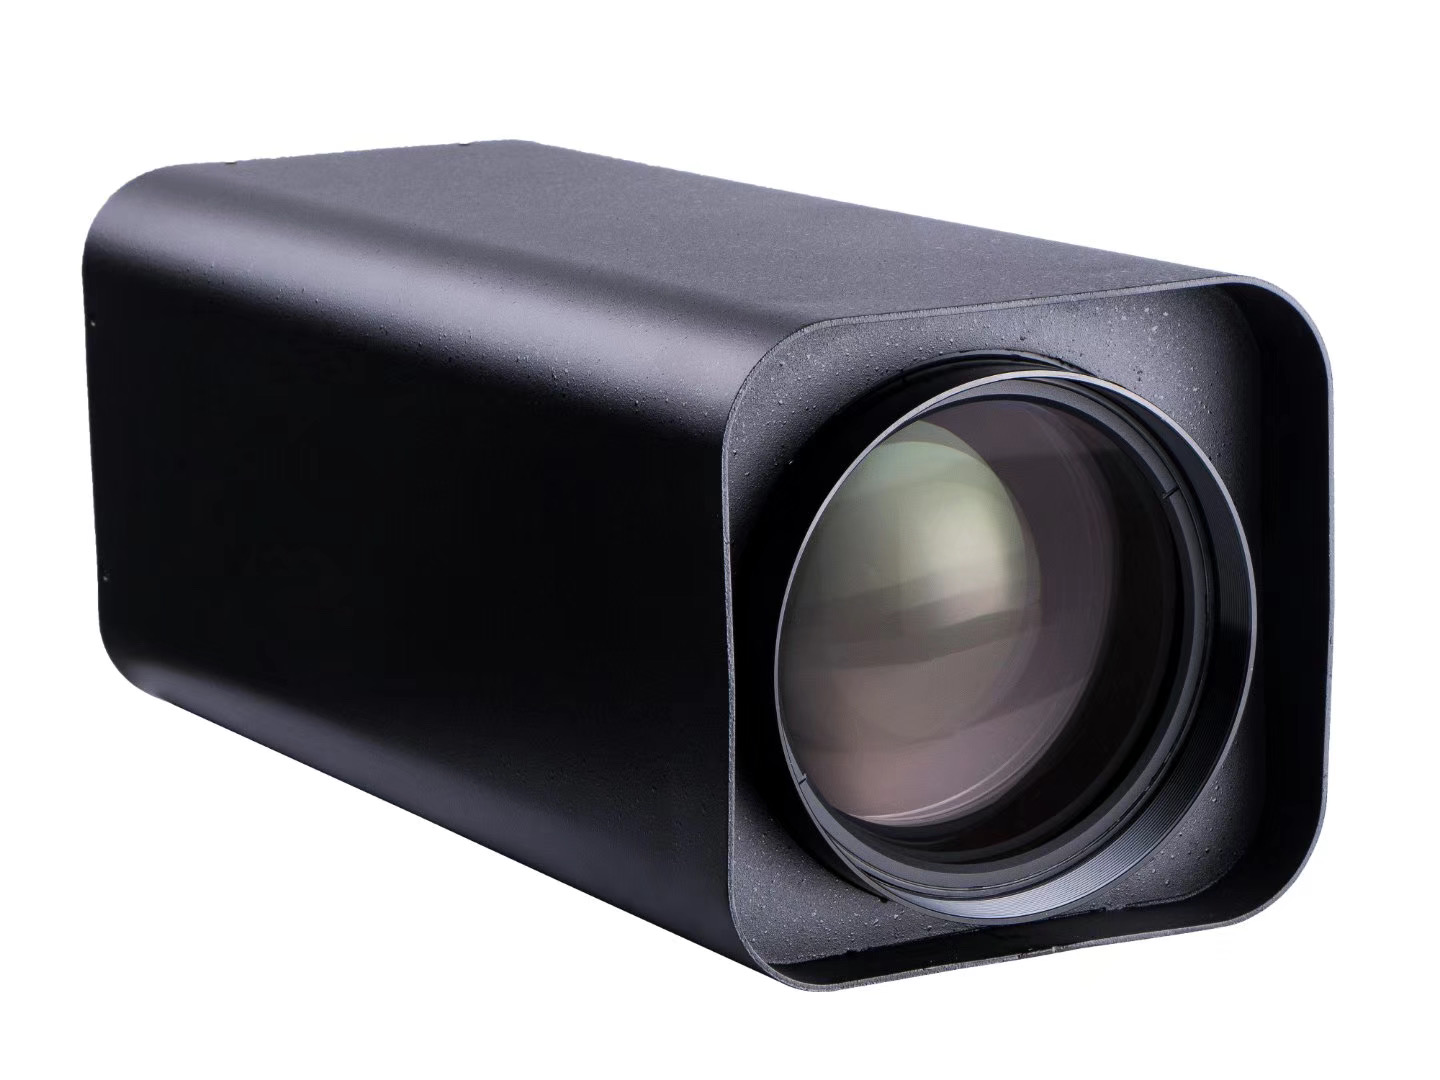 森木光学SM5520-1100-A01自动变焦1100mm长焦透雾安防监控镜头